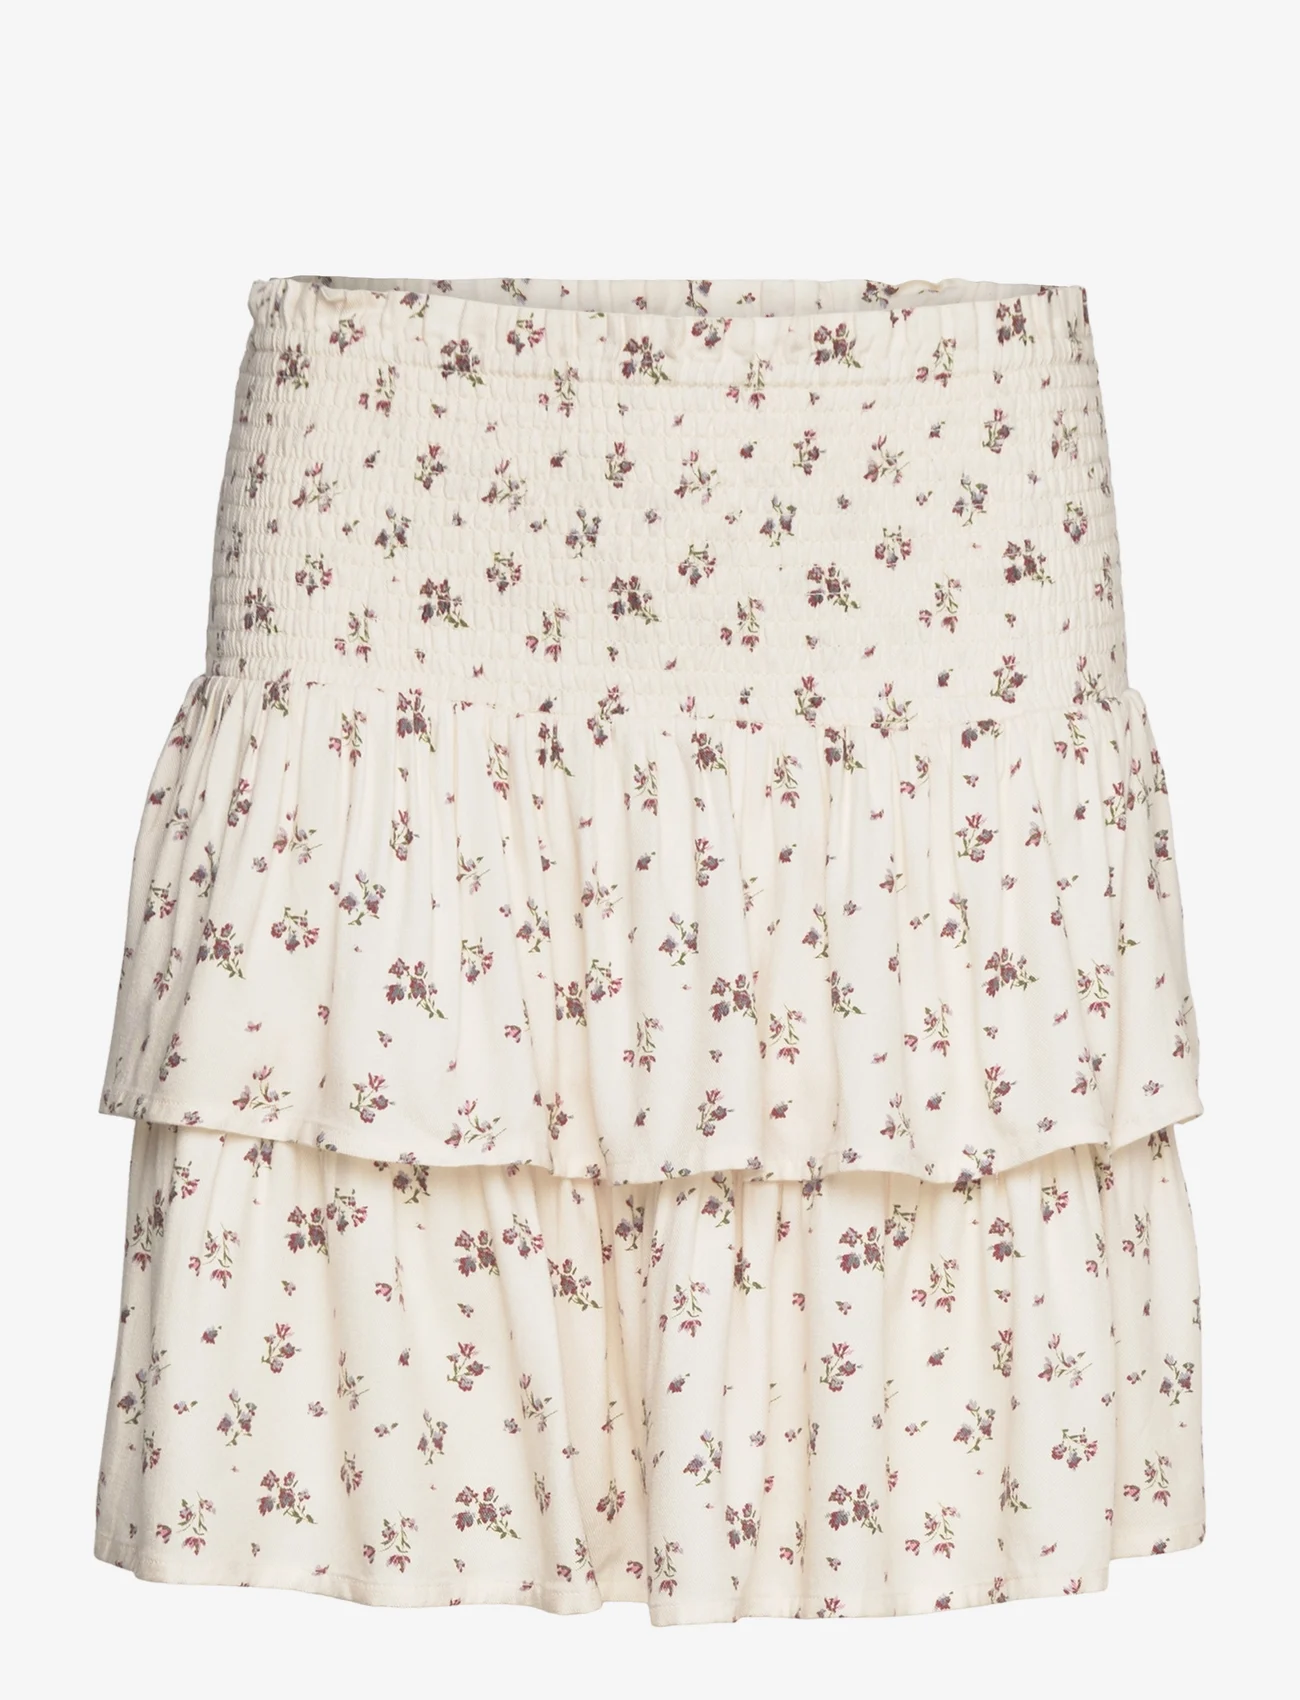 NORR - Sabby skirt - korte rokken - off-white flower print aop - 1